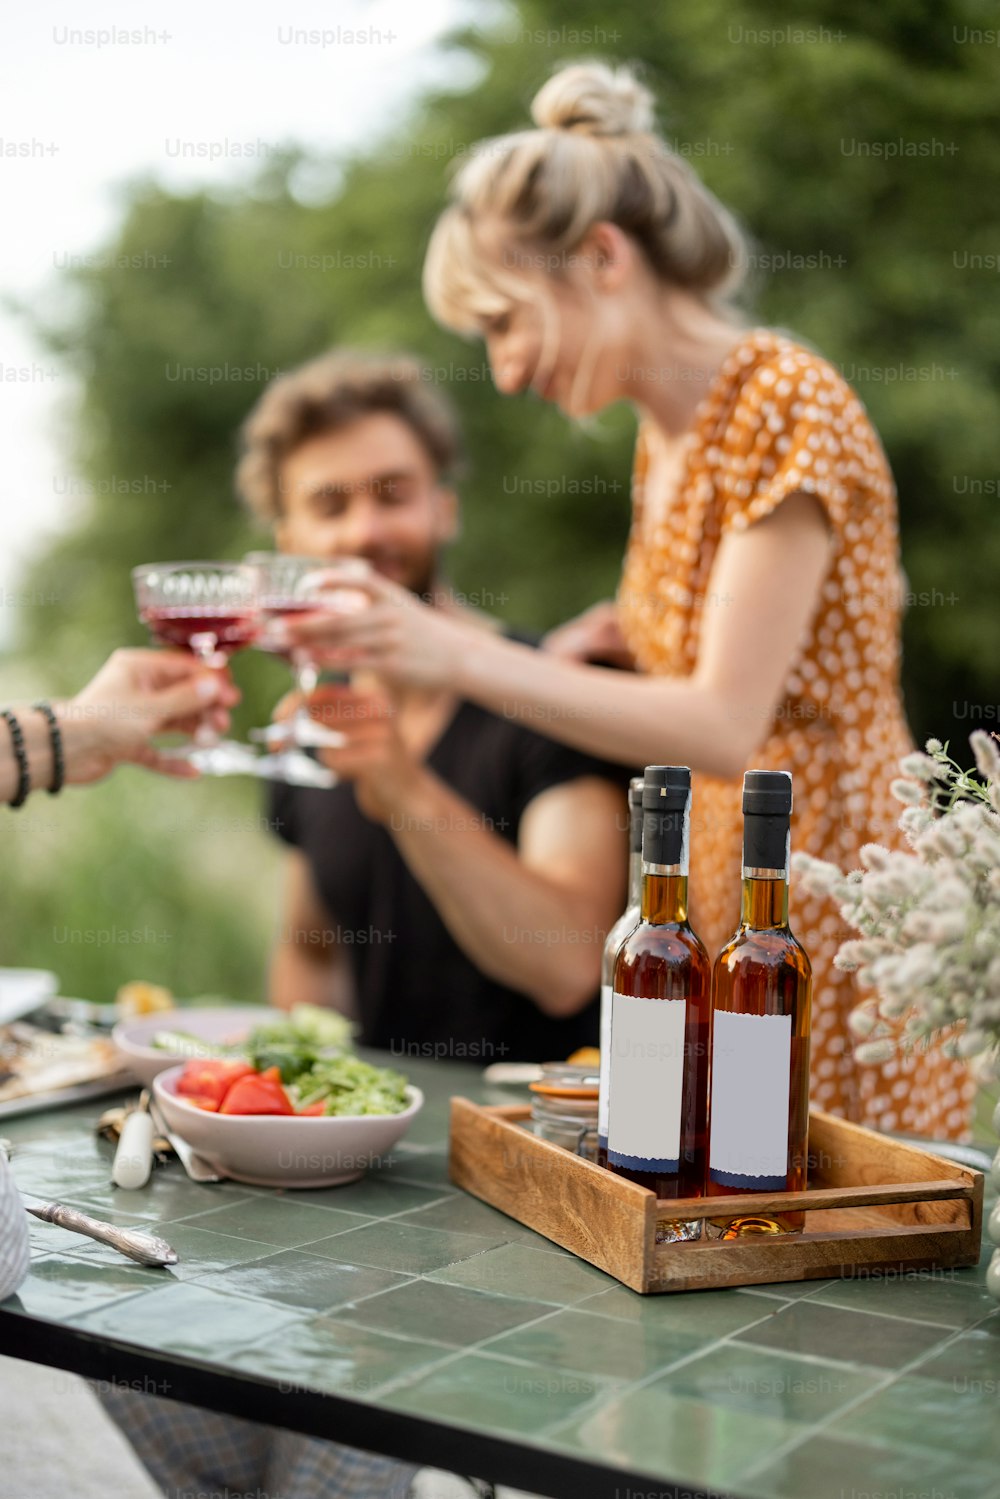 Les jeunes amis ont un déjeuner festif à l’extérieur, griller et boire du vin, passer un été heureux ensemble. Focus sur une bouteille avec des lables vierges à copier-coller sur la table